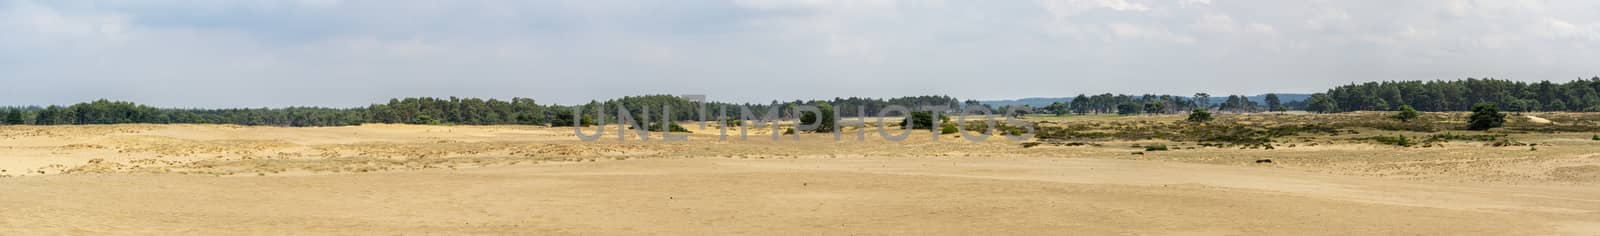 Panorama of the sand dunes at National Park Hoge Veluwe, Gelderland, Arnhem, Netherlands